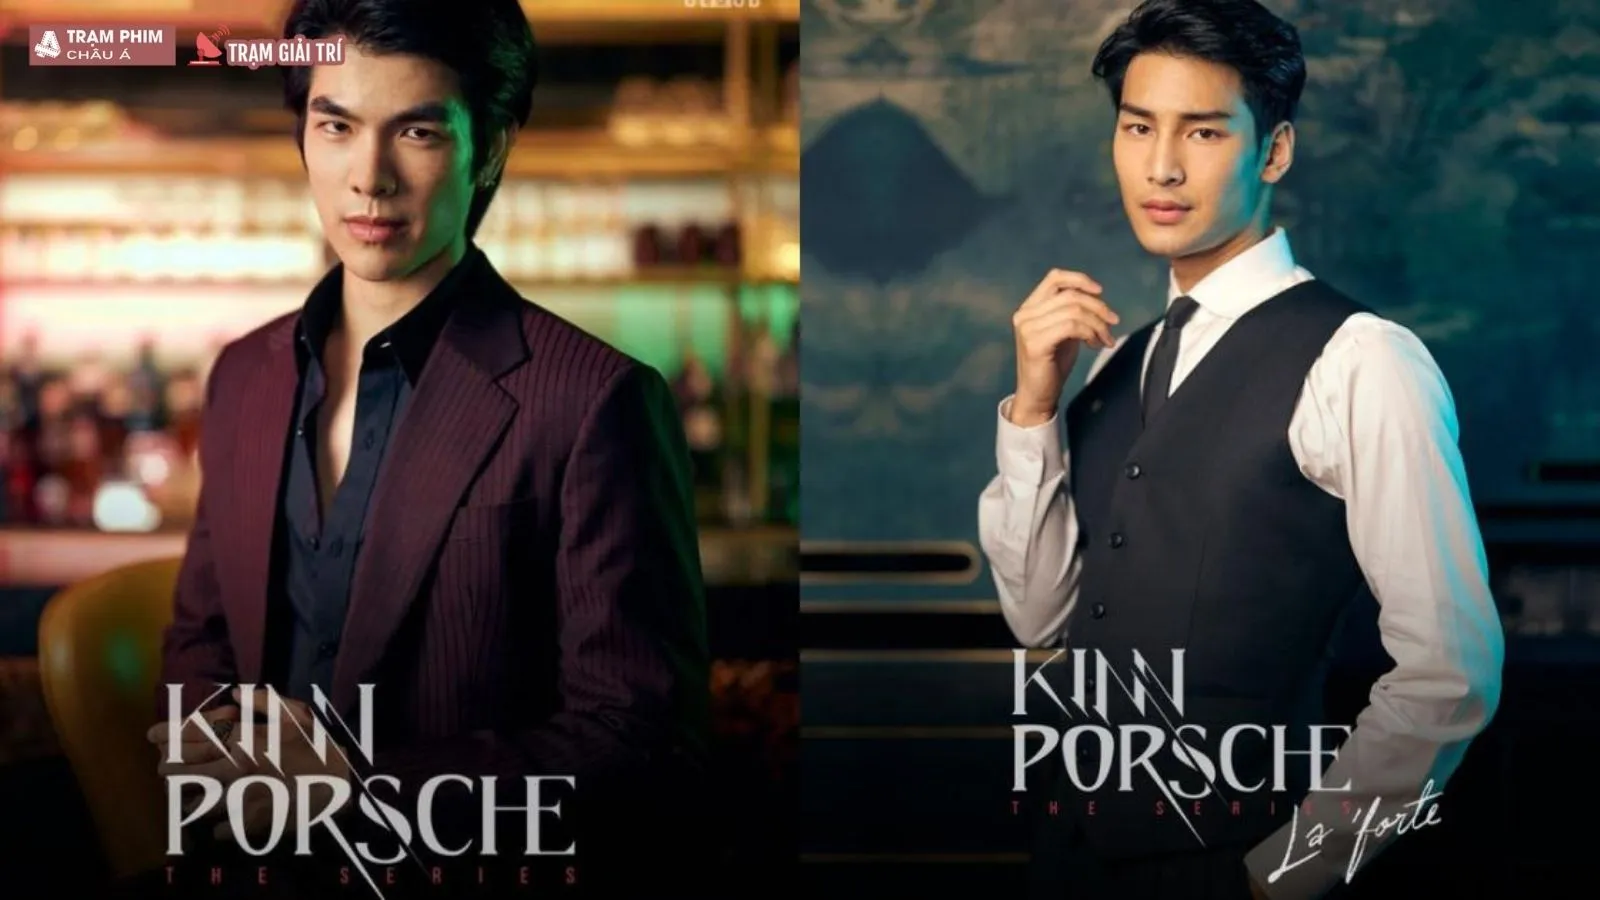 Phim đam mỹ KinnPorsche The Series đạt điểm Douban cao ngất ngưởng